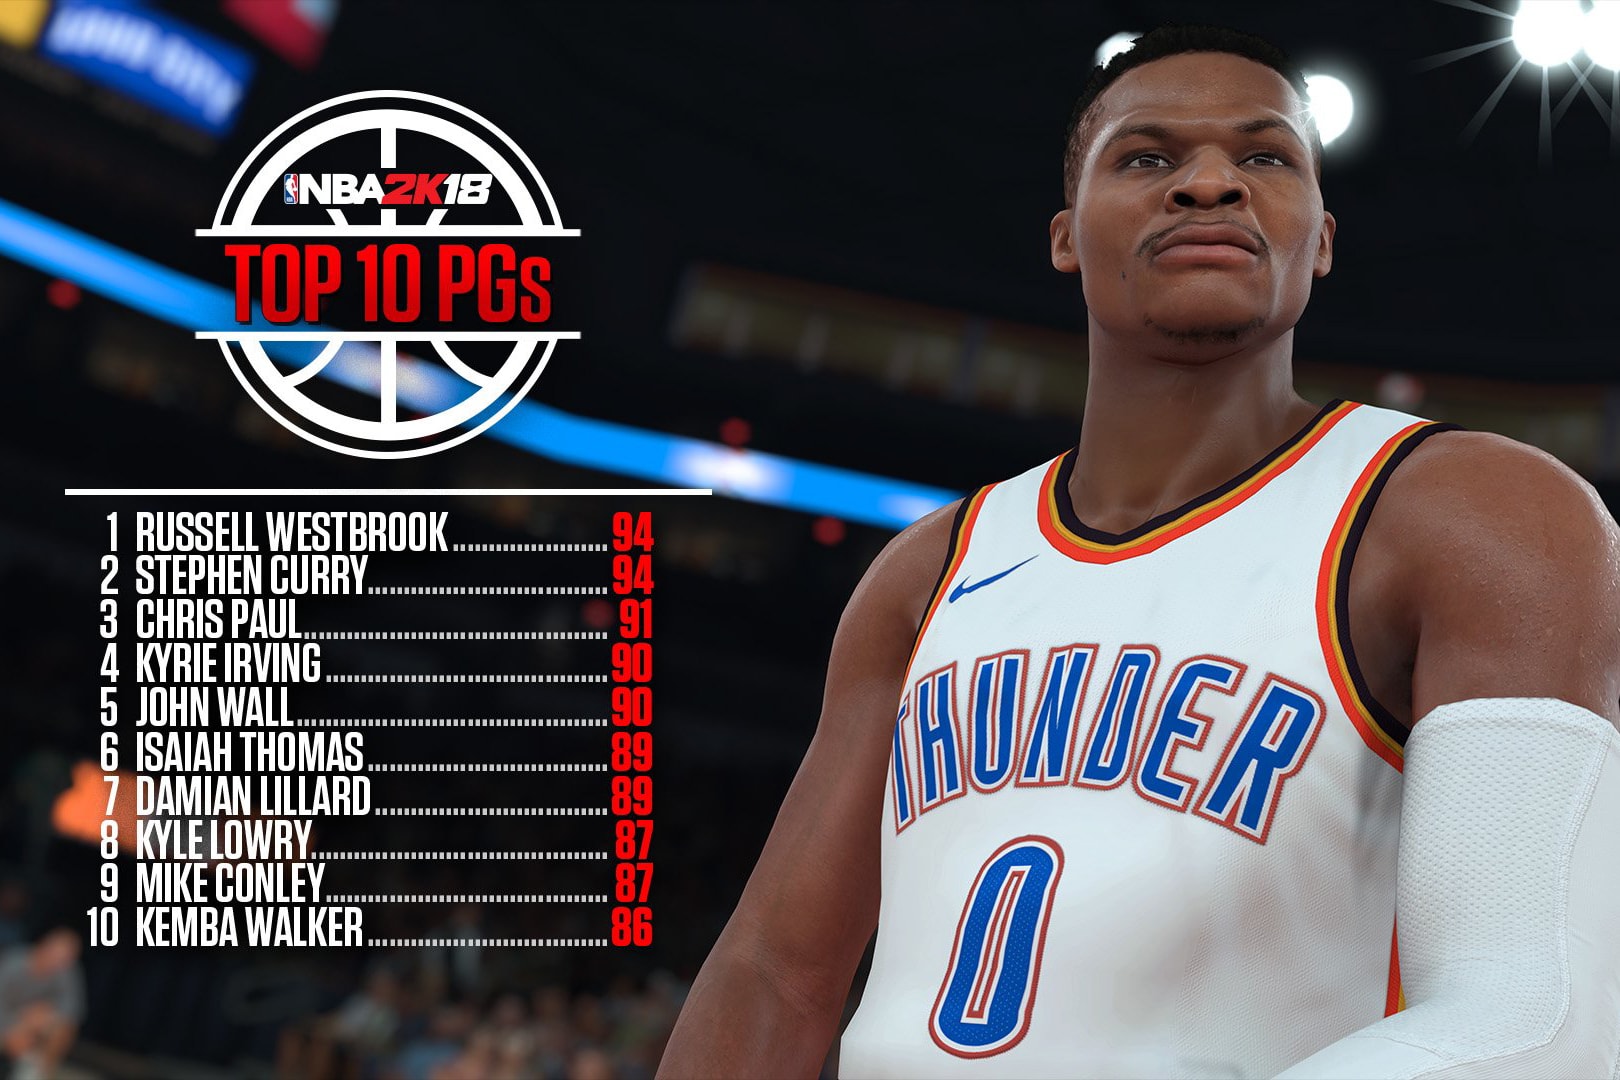 《NBA 2K18》五大位置 Top 10 球員及聯盟十大球星能力值排行揭曉